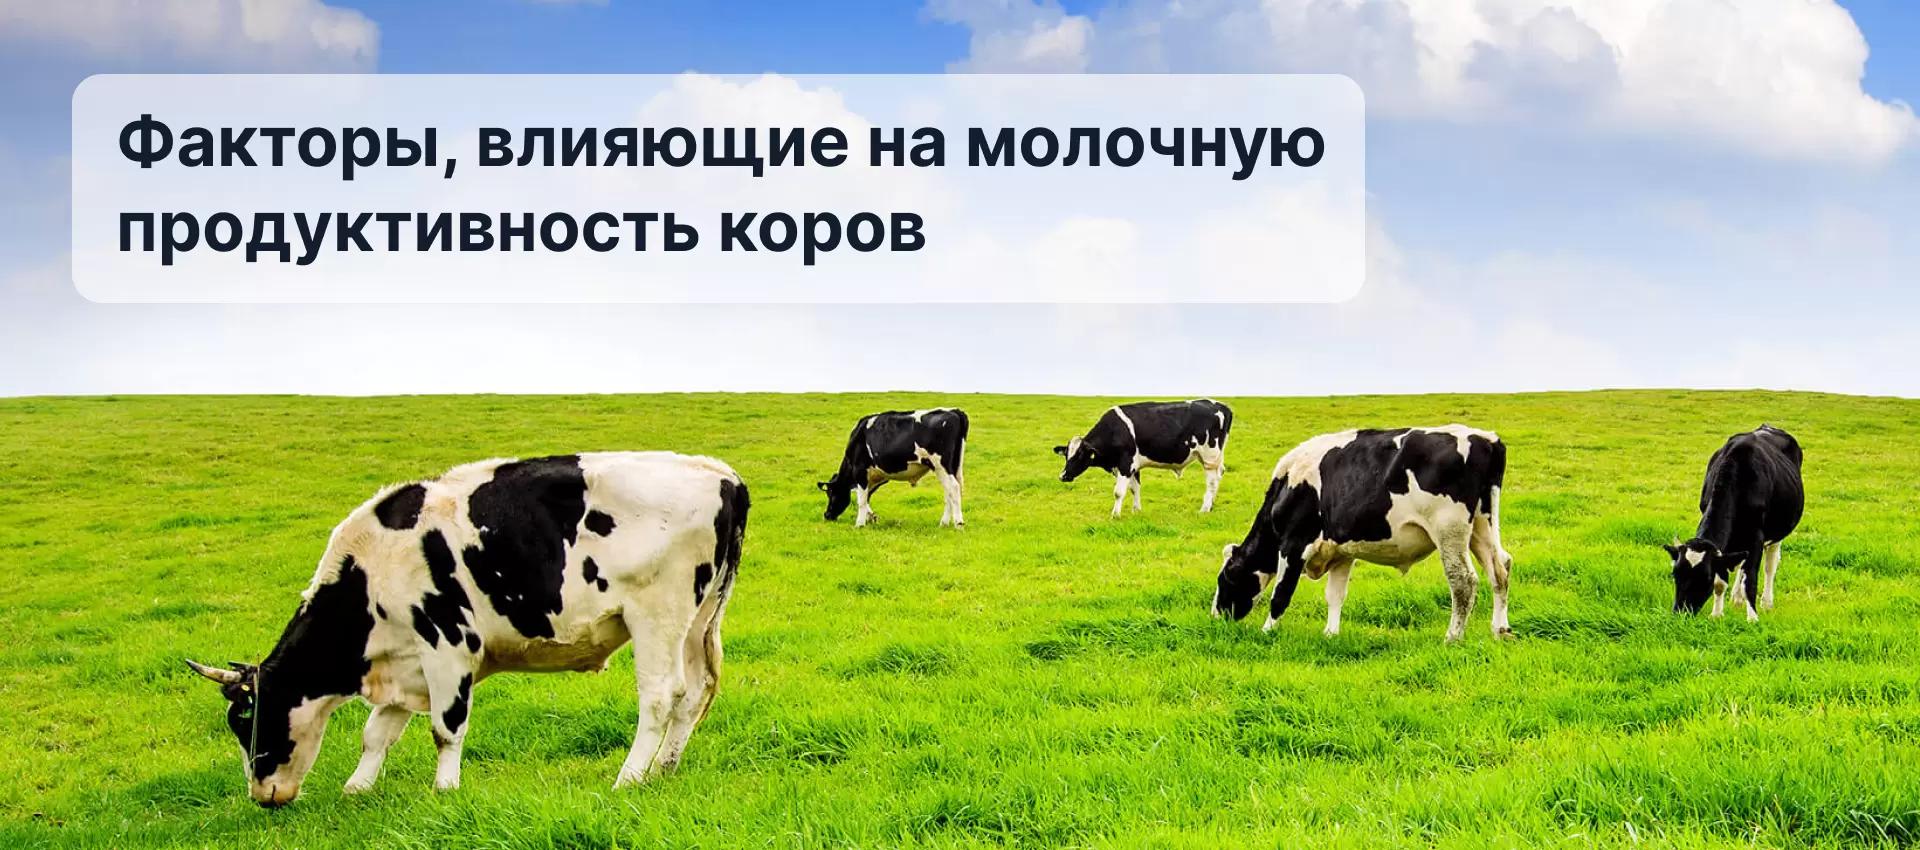 Факторы, влияющие на молочную продуктивность коров